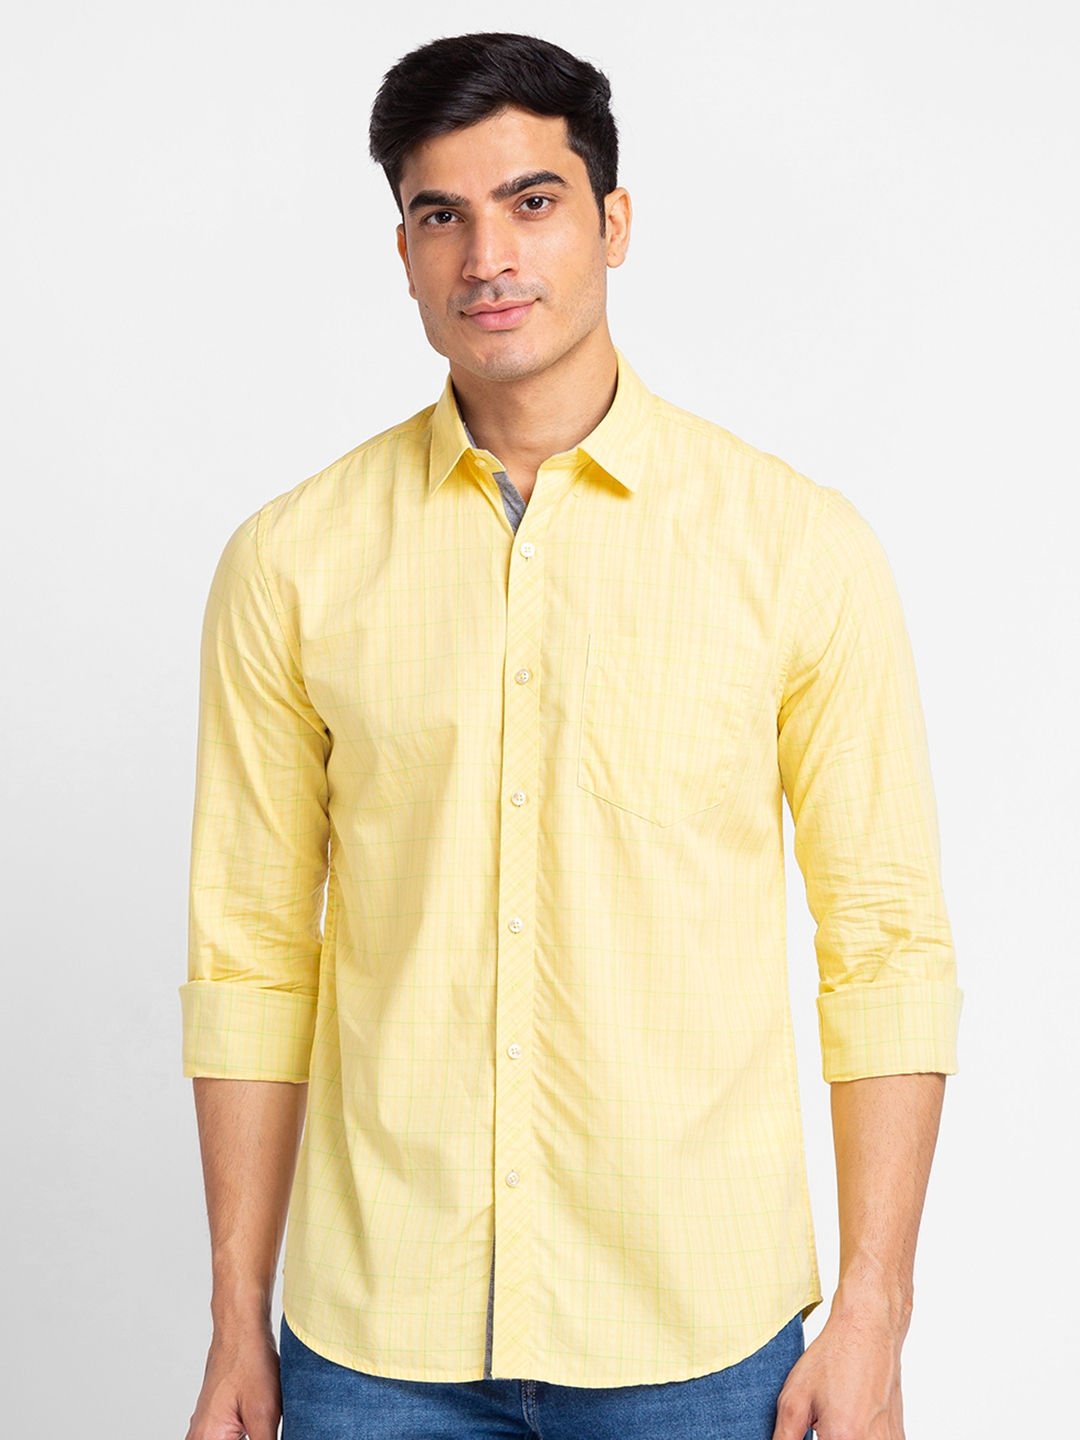 Globus Yellow Checked Shirt